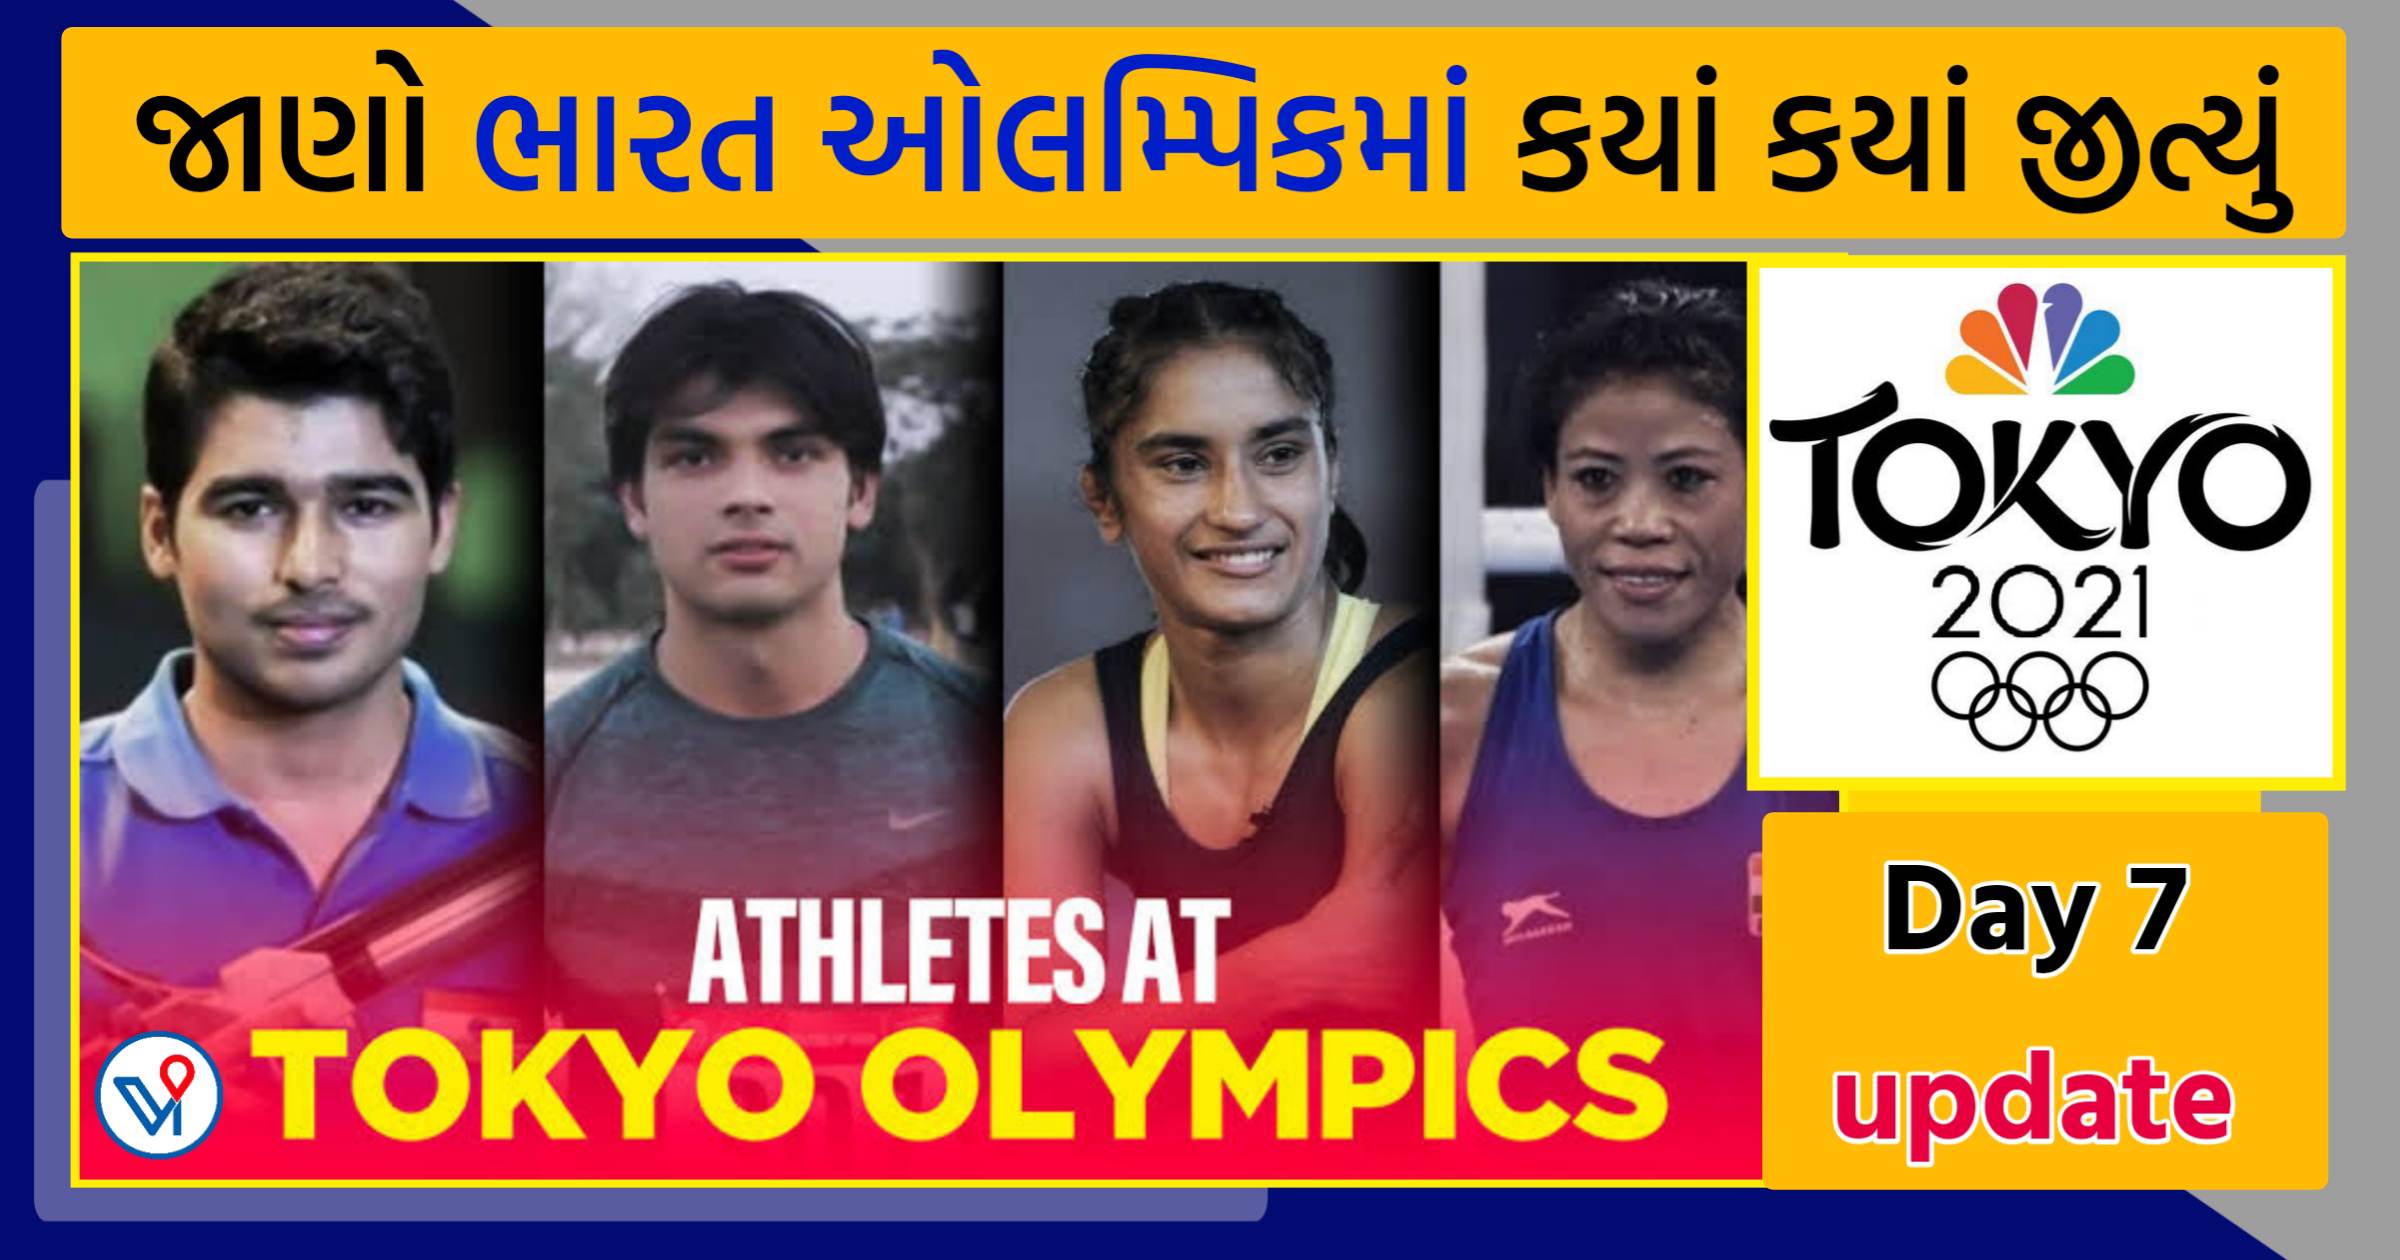 Tokyo Olympics India Results Day 7: ડેબ્યૂ ઓલિમ્પિક્સમાં મેડલથી દૂર, હવે મેરી કોમ પર નજર છે, જાણે ભારત ક્યાં કયાં જીત્યું